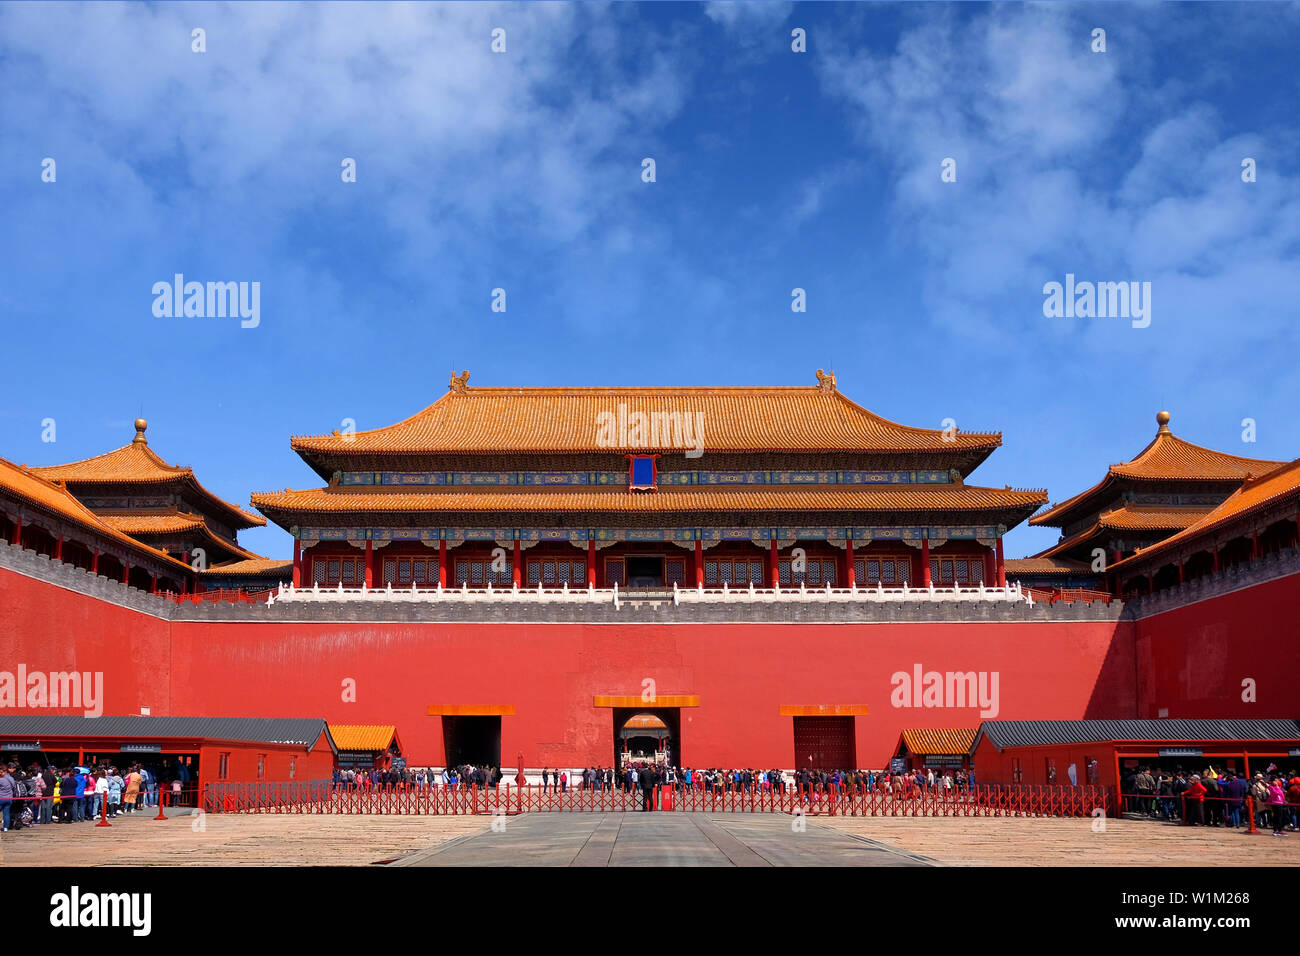 Die Menschen in der Warteschlange vor einer der internen rot gefärbten Tore des Palastes Museum, auch als die Verbotene Stadt in Peking bekannt, mit einer orange roo Stockfoto